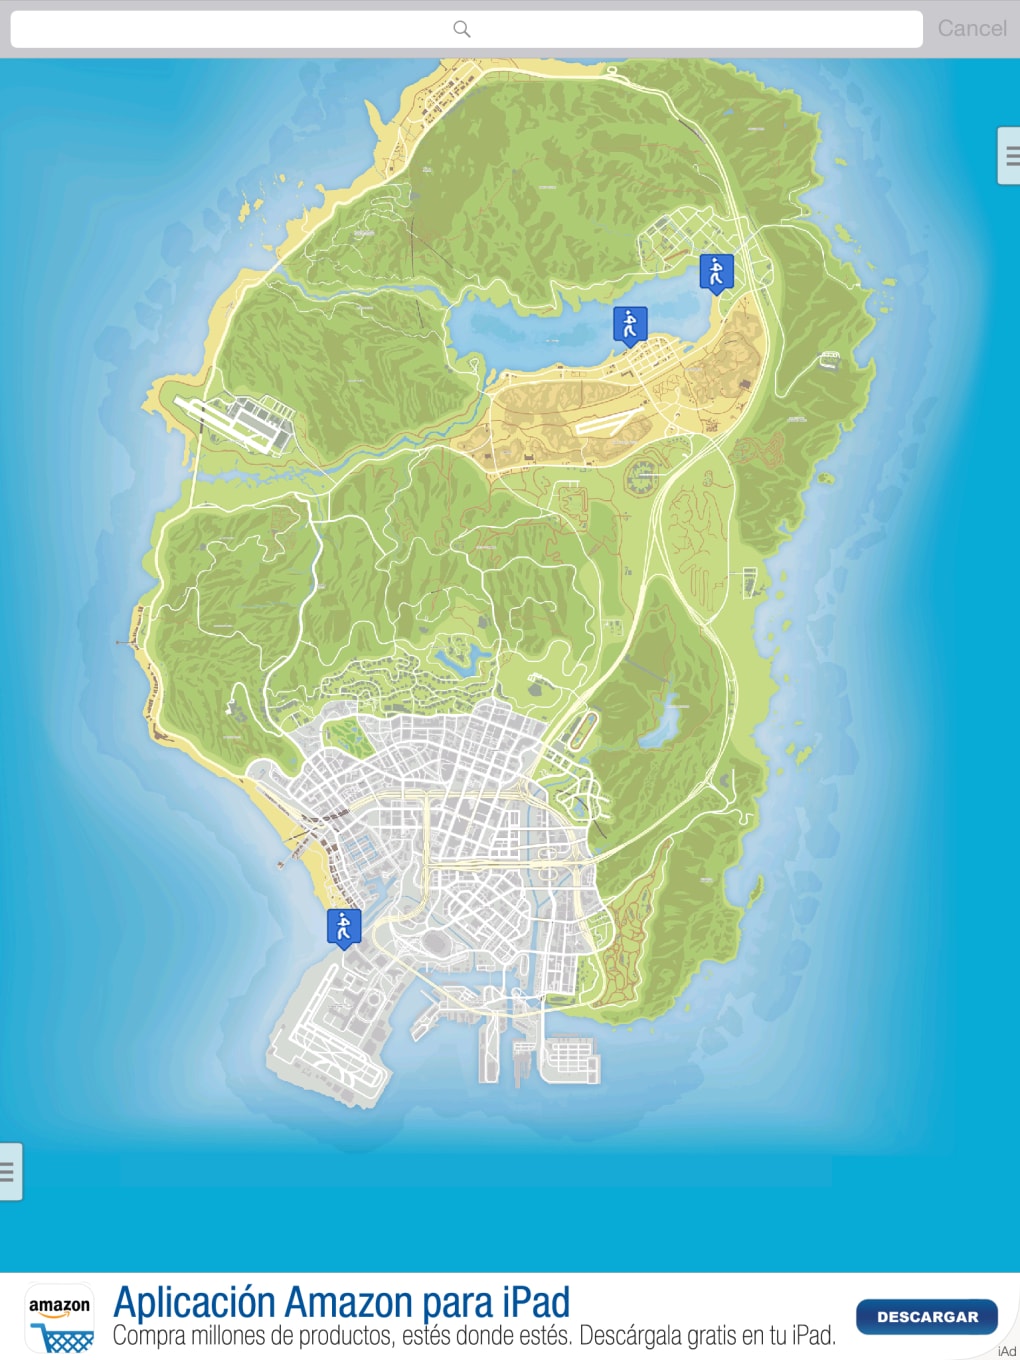 GenkiPlay — GTA V Map - Mapa Interativo Está jogando GTA V